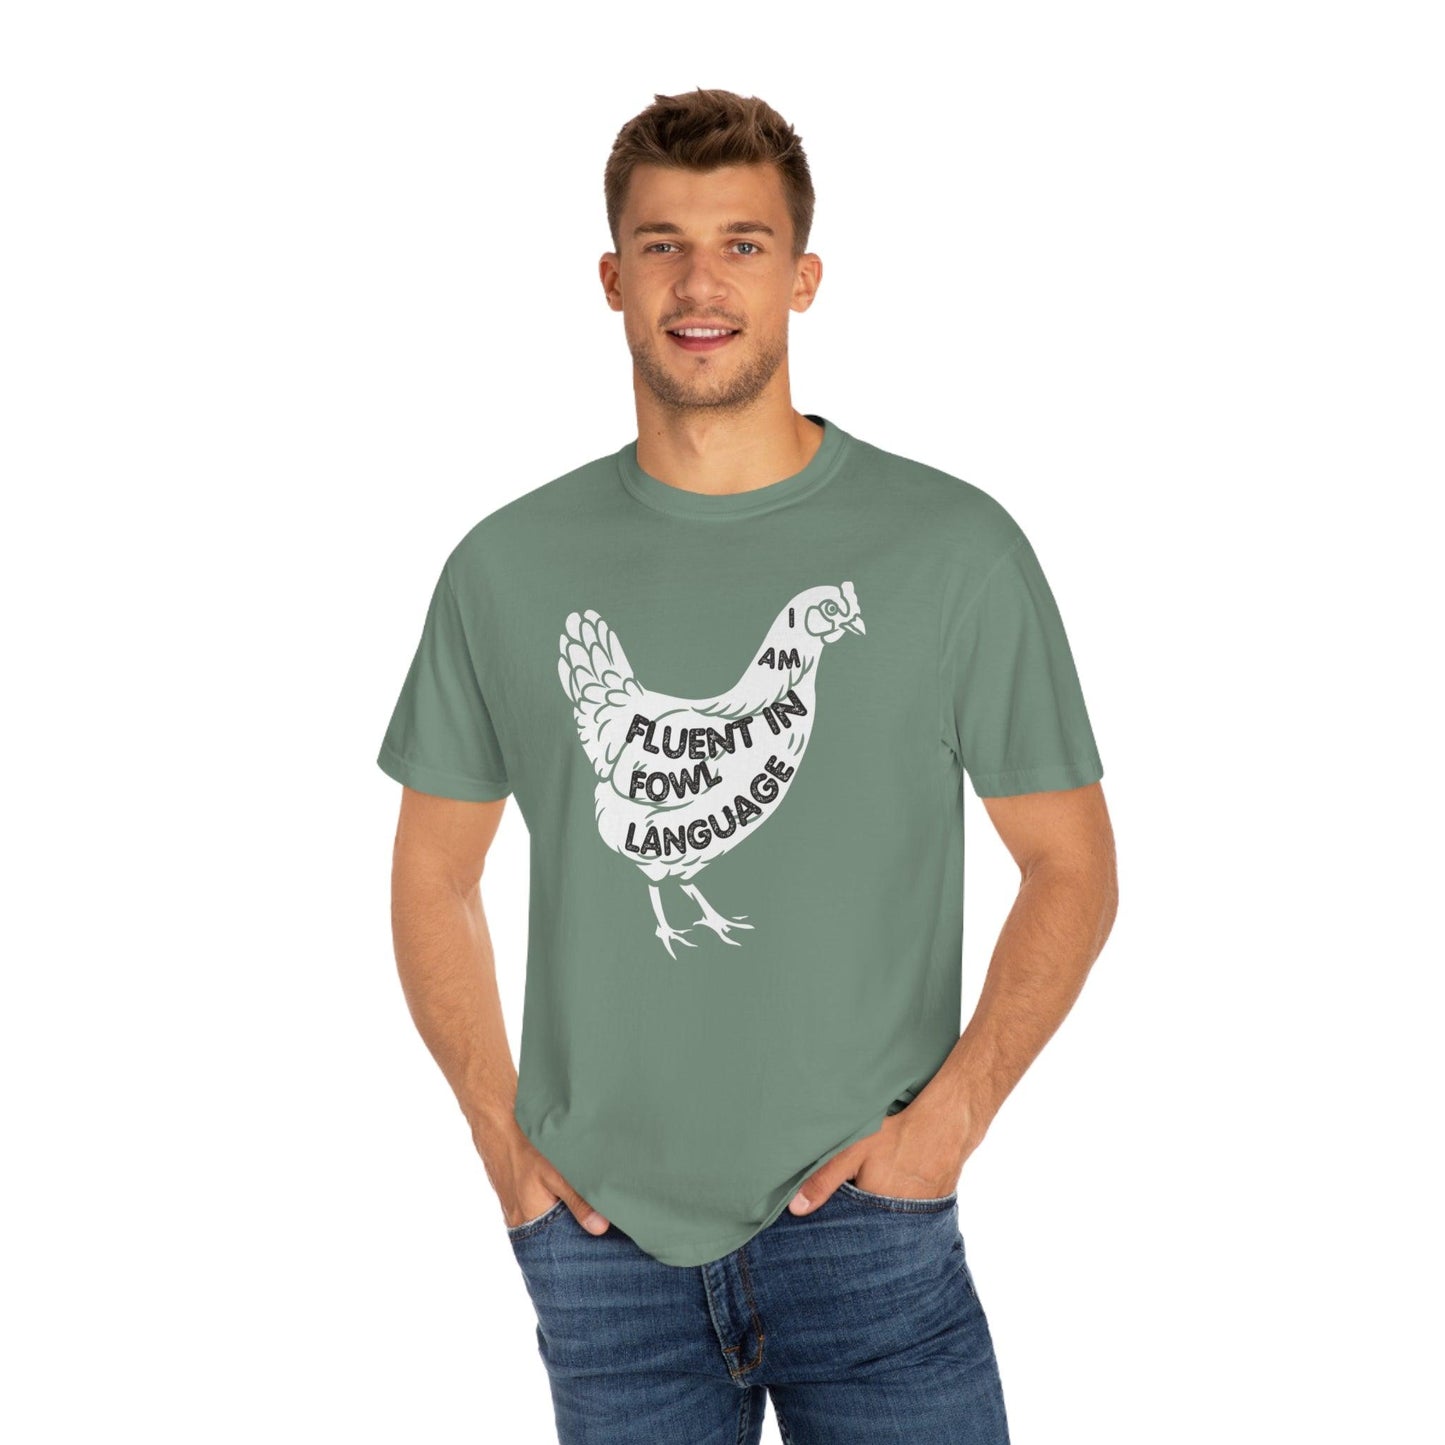 Chicken Shirt Chicken Tee Chicken Owner Gift -Fluent in Fowl Language Gift For Chicken Lover gift